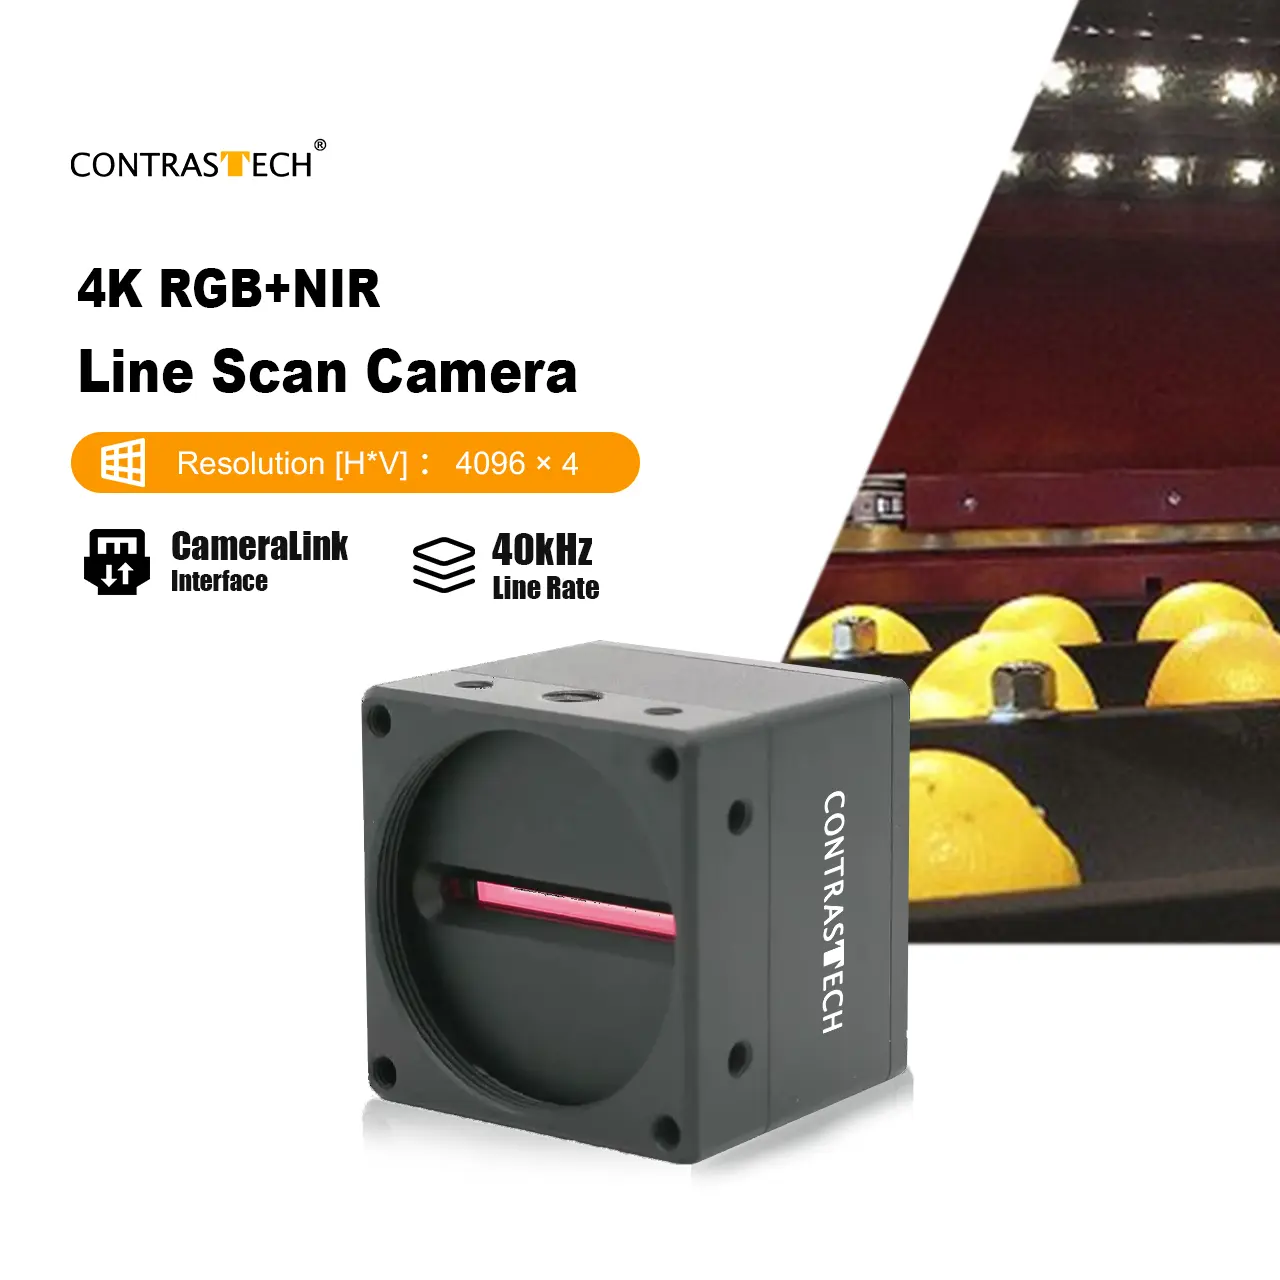 Alto rendimiento 4K 40kHz RGB + NIR 4 bandas multiespectral Line Scan CameraLink Color IR Camera para inspección ferroviaria